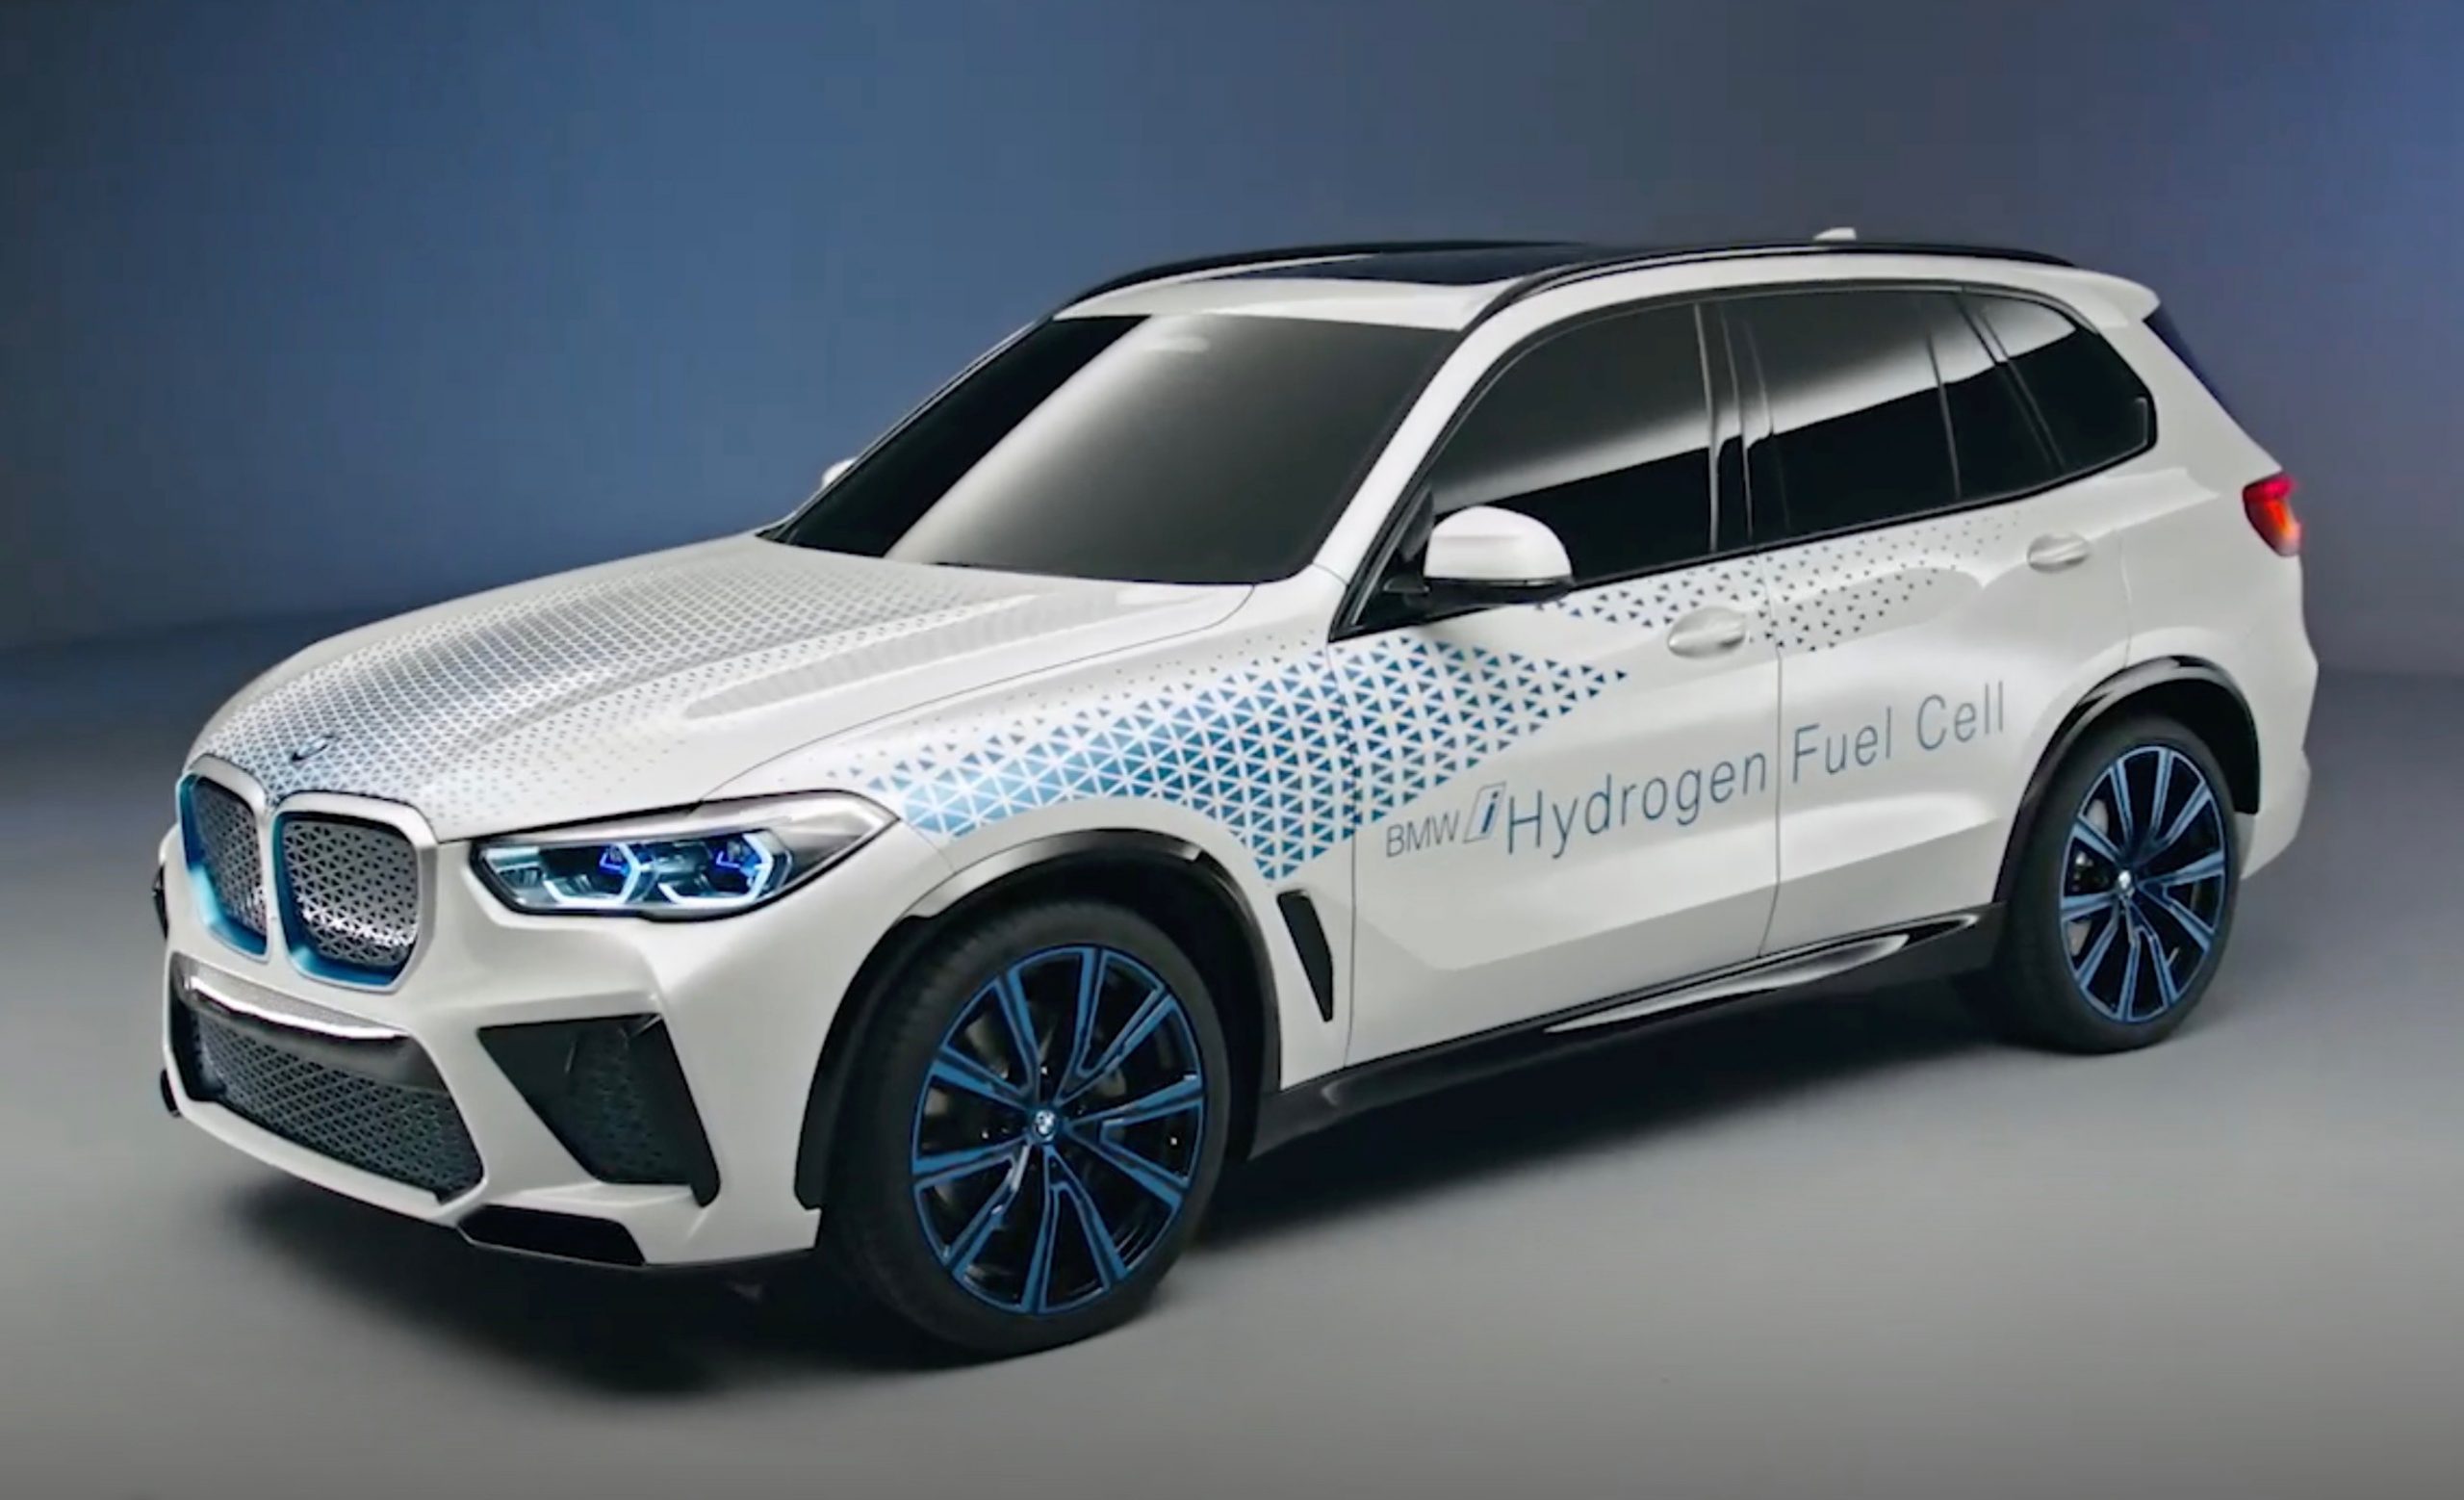 BMW i Hydrogen NEXT powertrain revealed with X5 concept